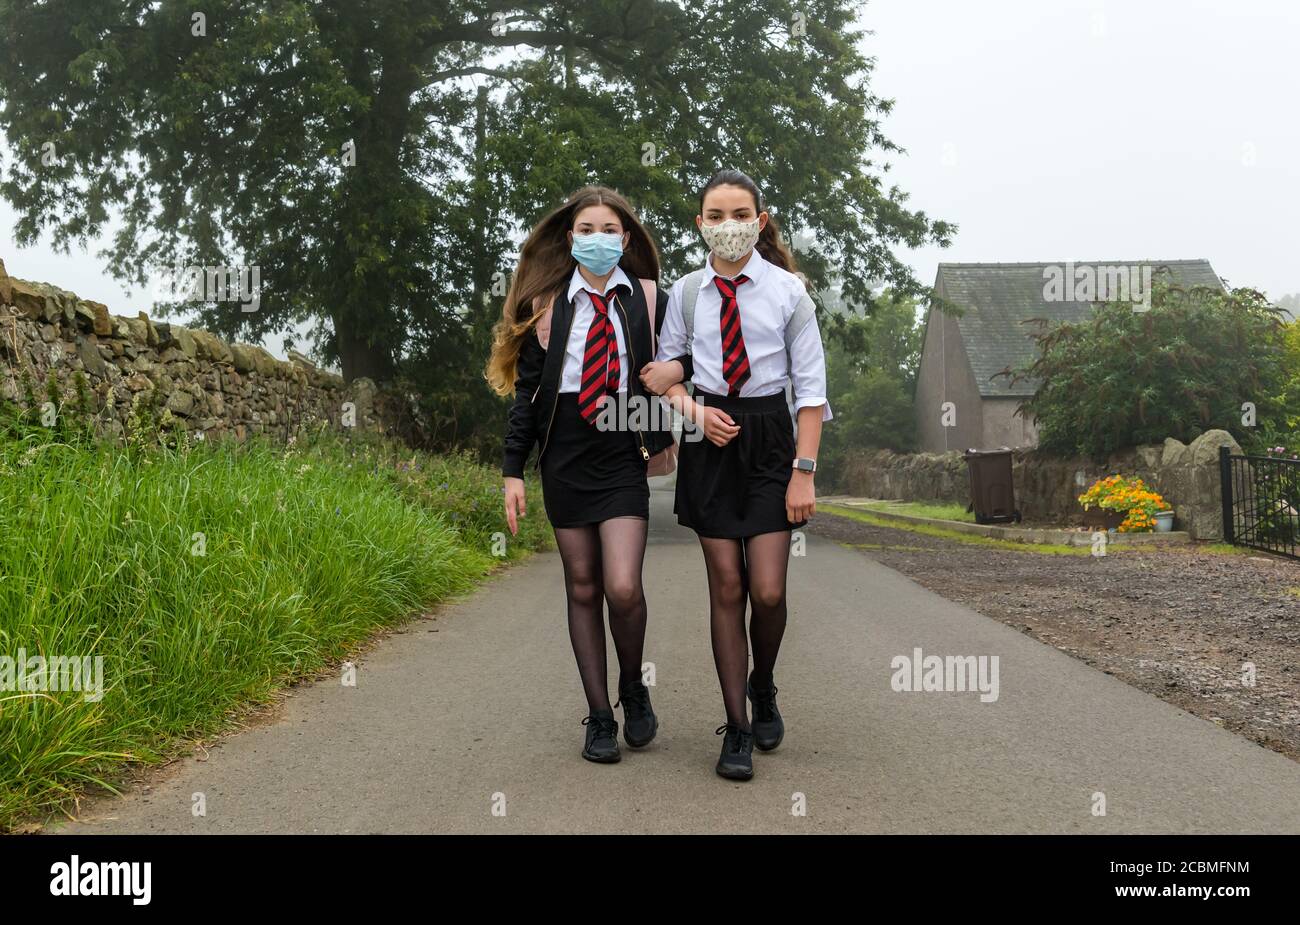 Zwillingsmädchen verlassen ihr Zuhause mit Gesichtsmasken und beginnen den ersten Schultag nach der Aussperrung der Pandemie Covid-19, Schottland, Großbritannien Stockfoto